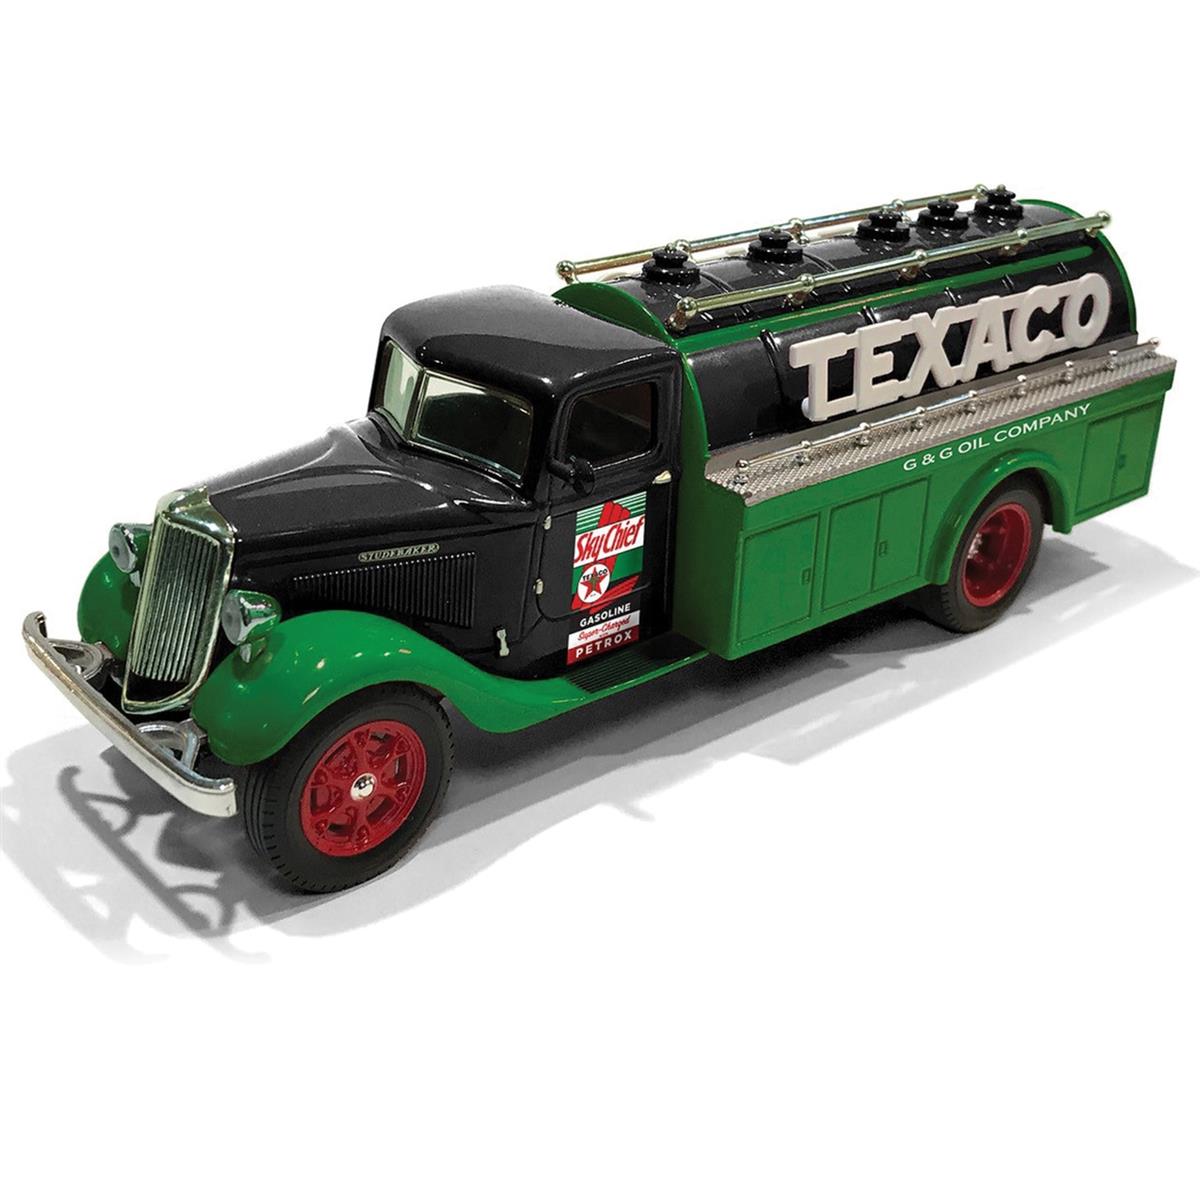 Vintage Fuel ヴィンテージフューエル Texaco 1939 Studebaker Tanker Truck 1/34 Scale スケール ダイキャストミニカー ダイキャスト おもちゃ コレクション ミニチュア ダイカスト モデルカー ミニカー アメ車 ギフト プレゼント